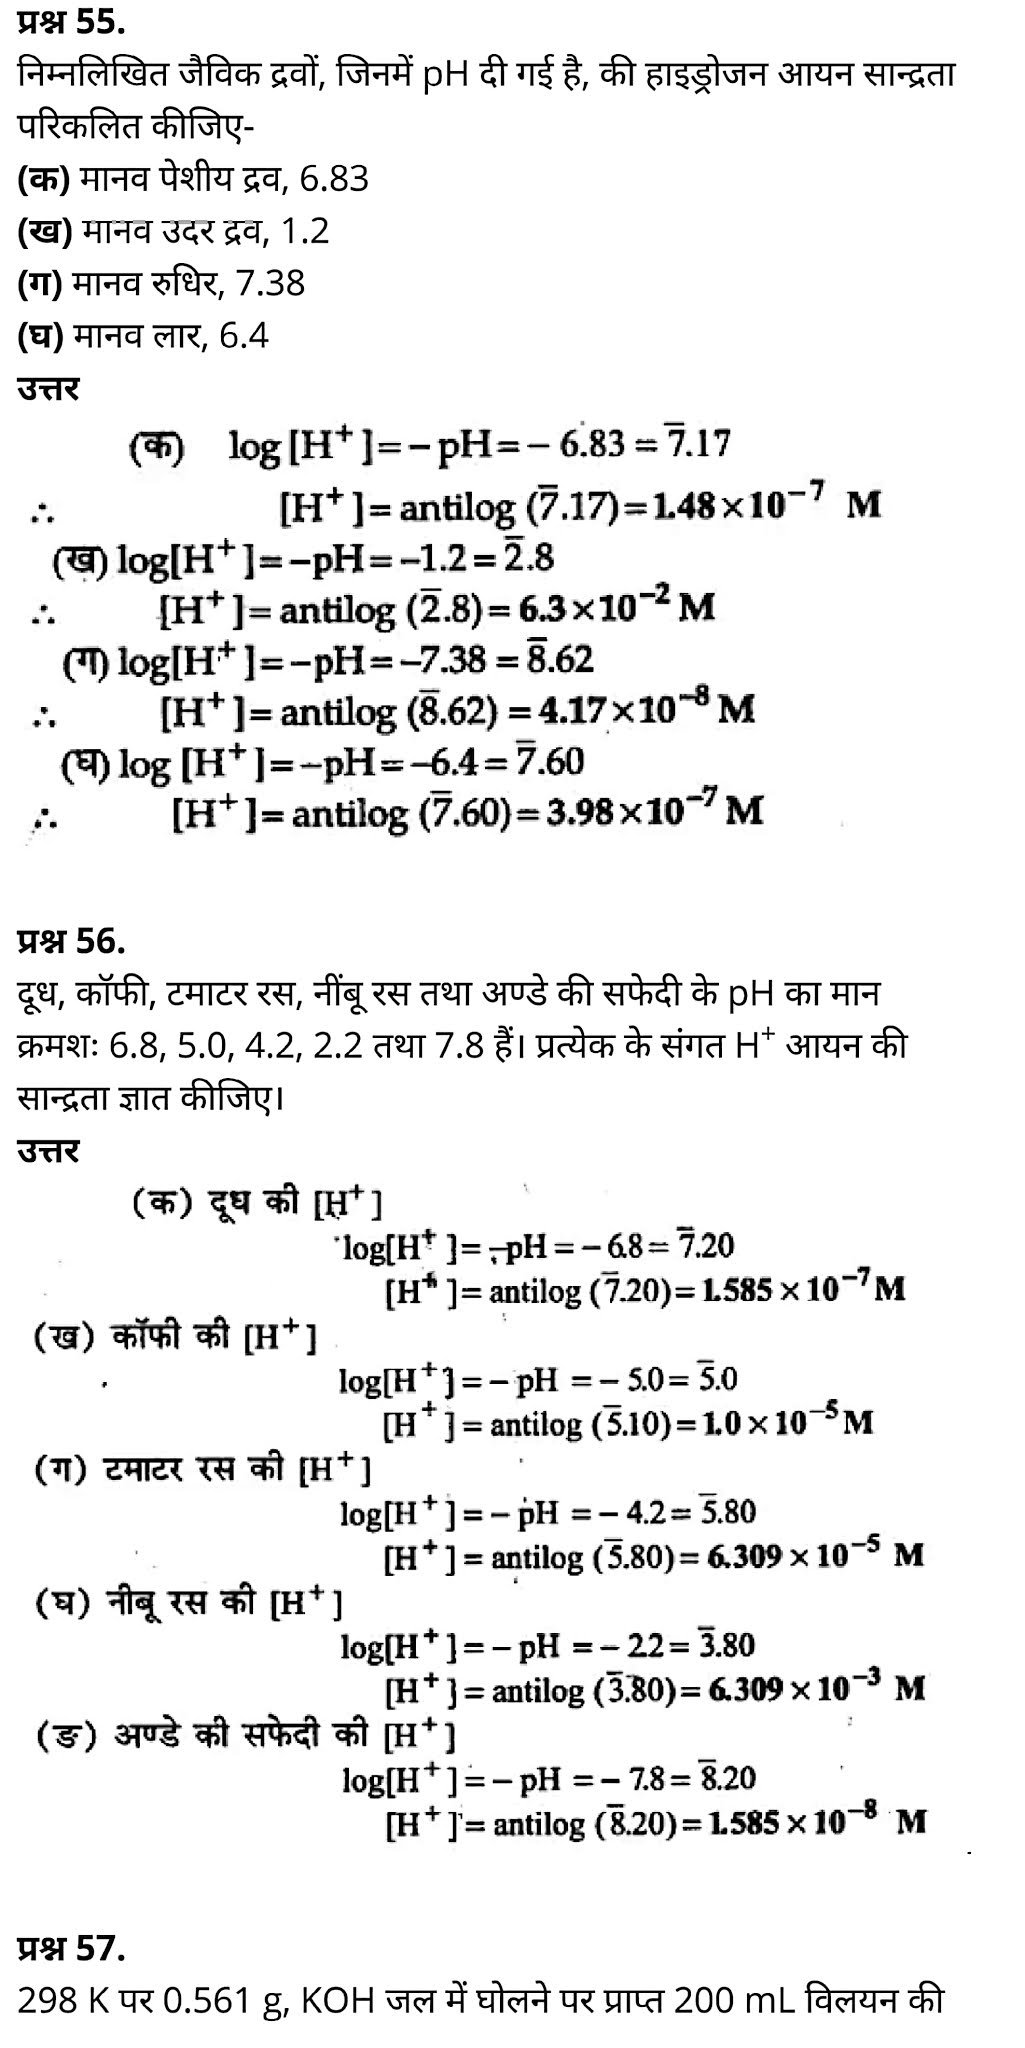 कक्षा 11 रसायन विज्ञान अध्याय 7, कक्षा 11 रसायन विज्ञान  का अध्याय 7 ncert solution in hindi, कक्षा 11 रसायन विज्ञान  के अध्याय 7 के नोट्स हिंदी में, कक्षा 11 का रसायन विज्ञान अध्याय 7 का प्रश्न उत्तर, कक्षा 11 रसायन विज्ञान  अध्याय 7 के नोट्स,